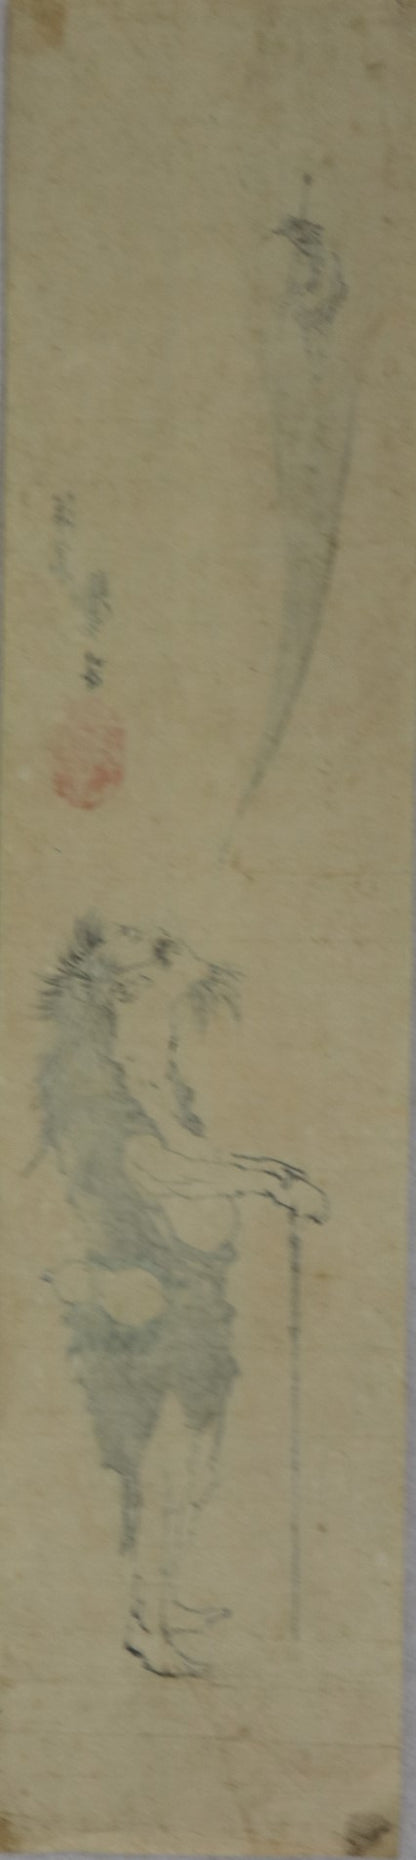 The Chinese Sage Tieguai by Katsuhika Taito II / Le sage Chinois Tieiguai par Katsuhika Taito II